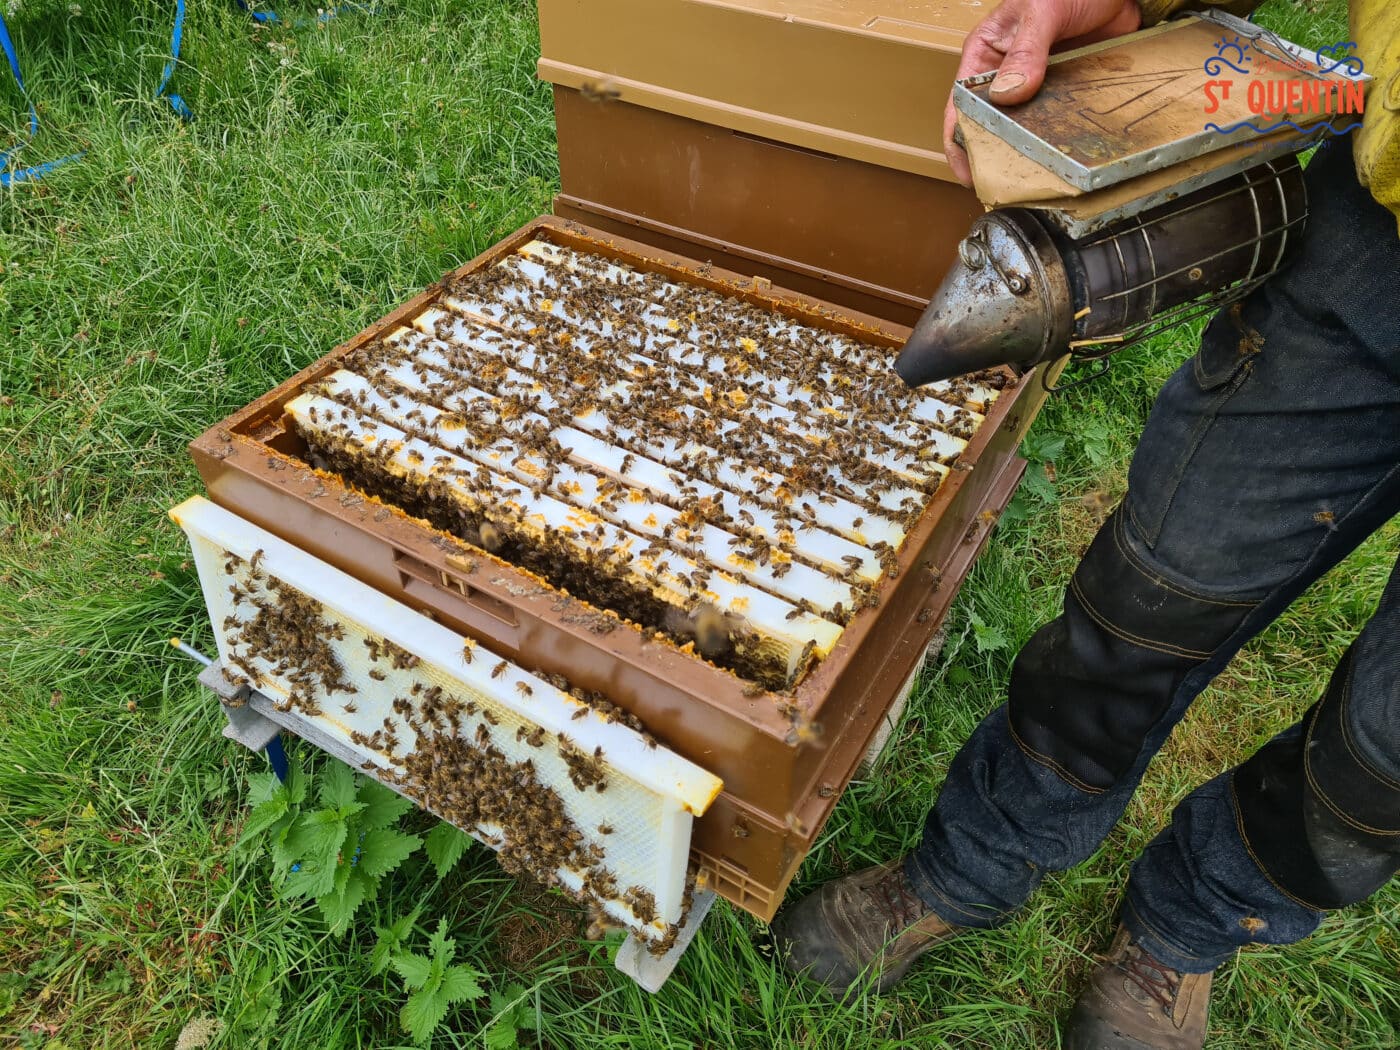 ambassadeur les abeilles de francilly 05 - Office de tourisme du Saint-Quentinois